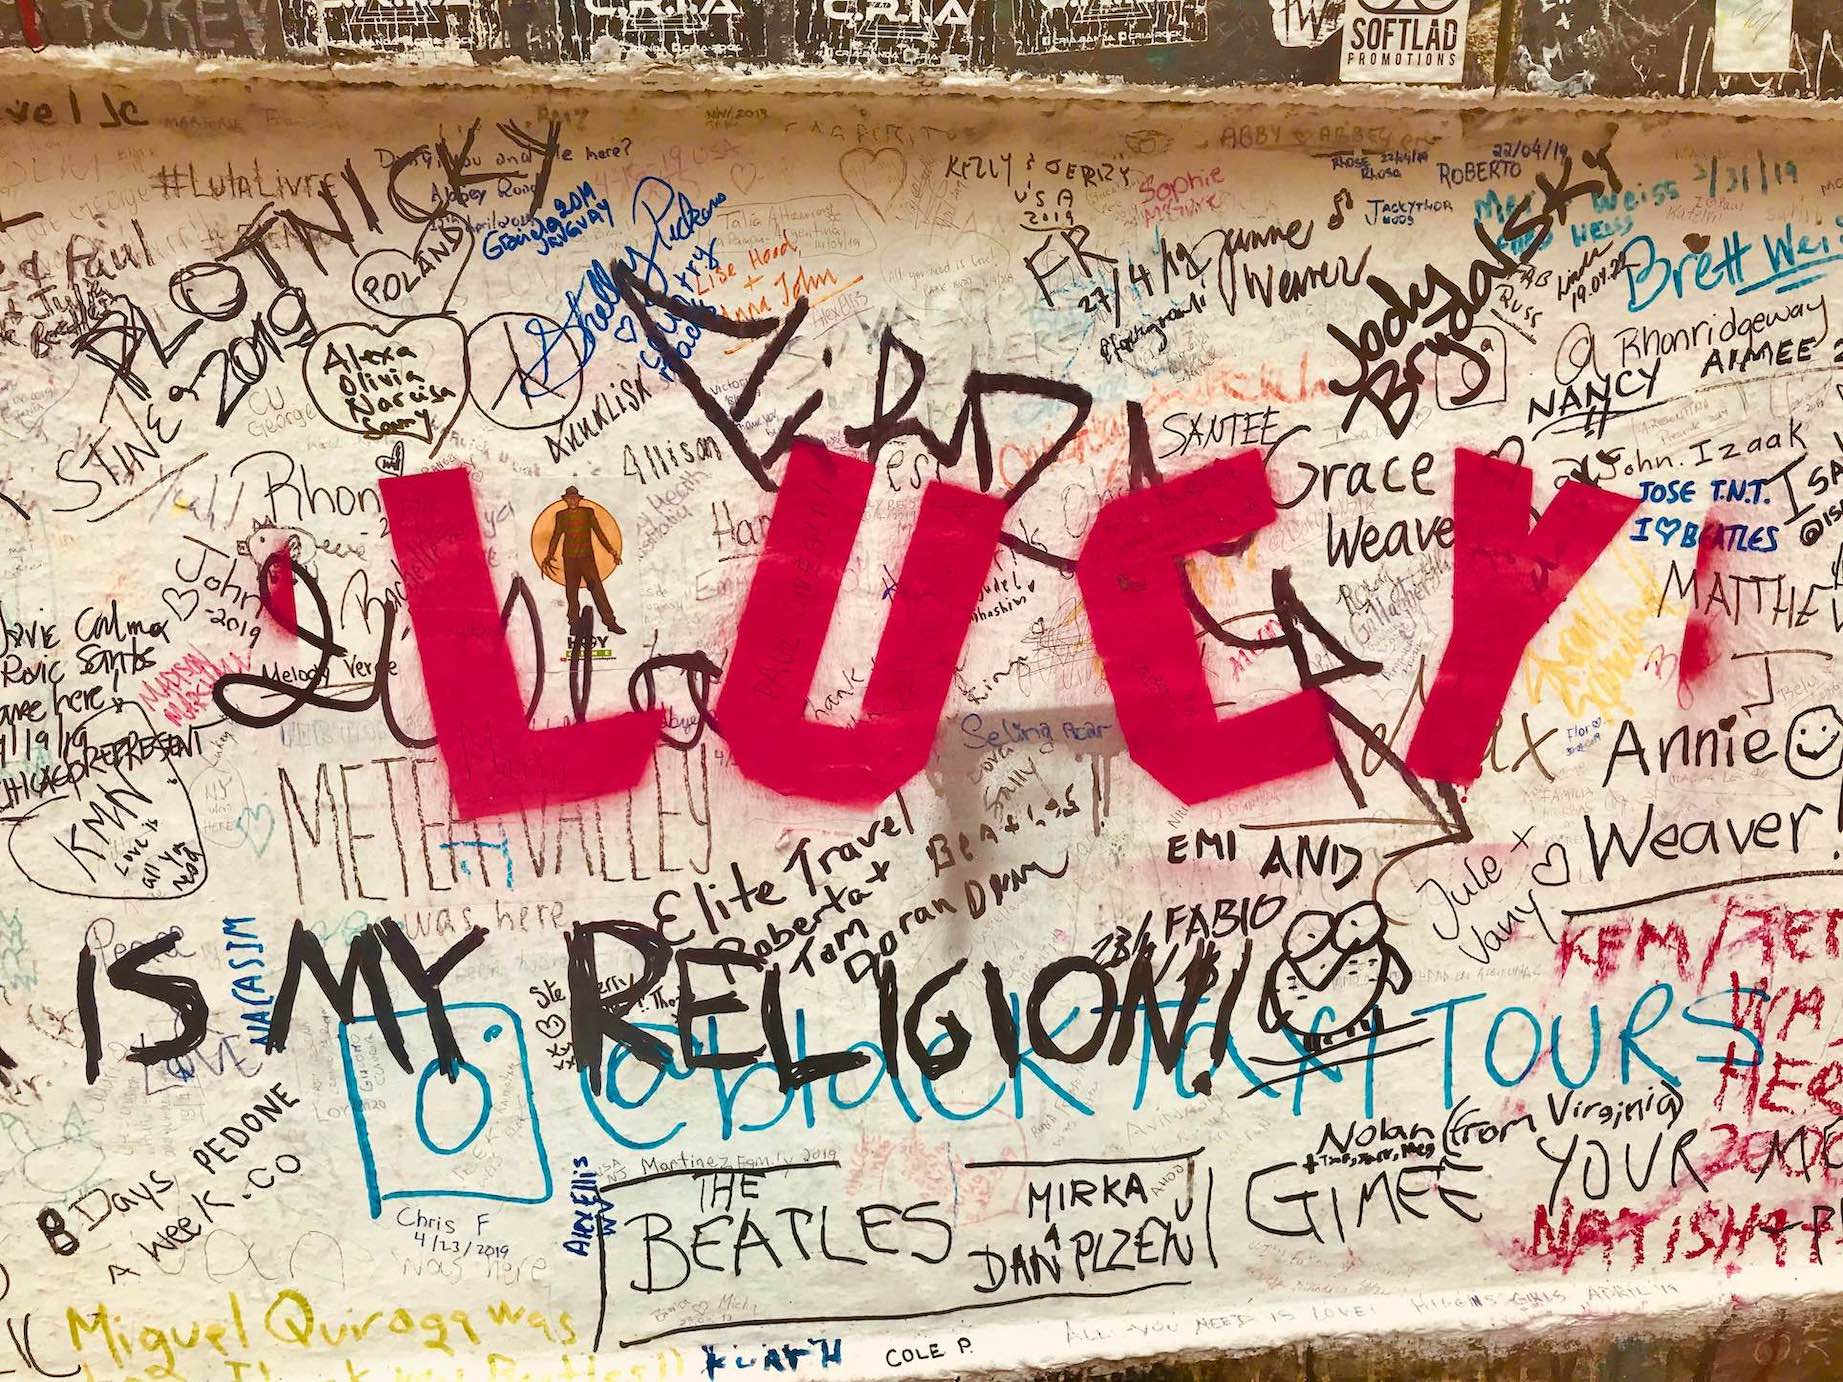 Fan graffiti at Abbey Road in London